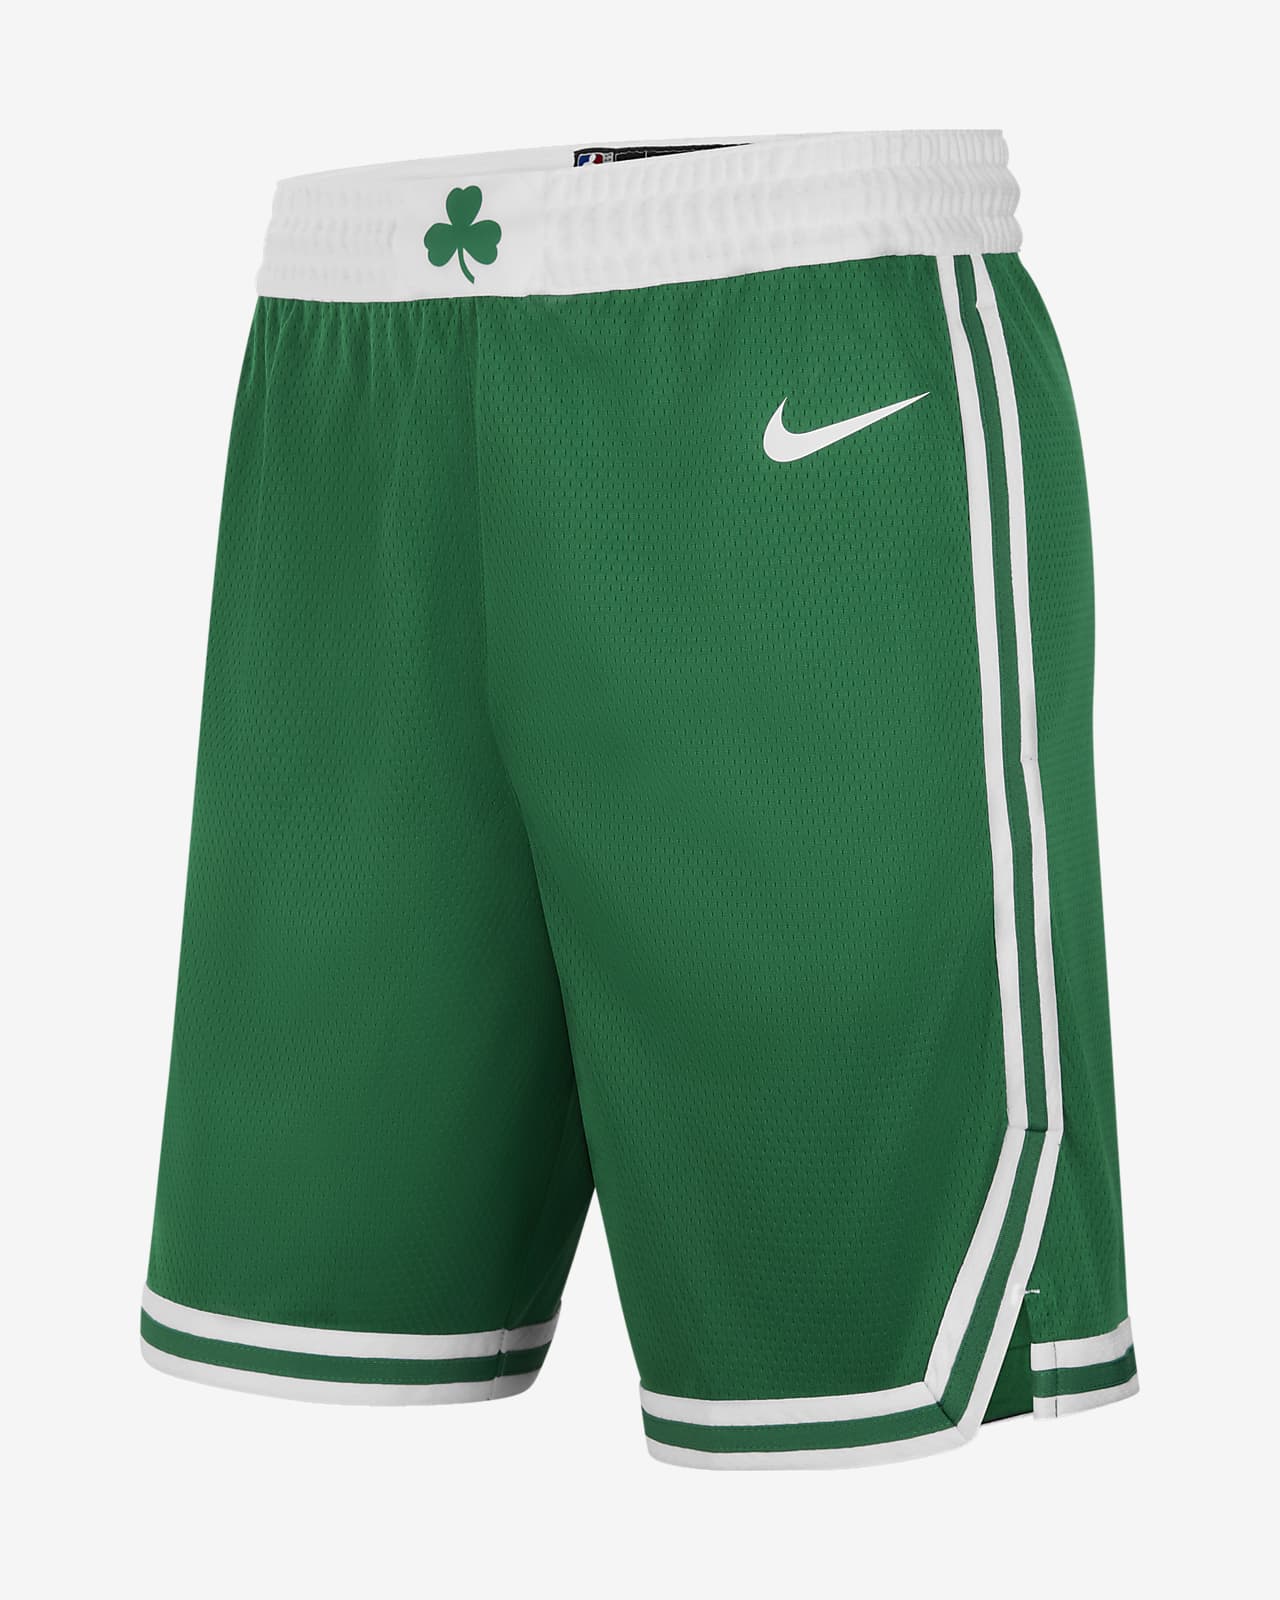 Pantalón corto Nike Courtside Fleece de los Boston Celtics - Trébol -  Hombres